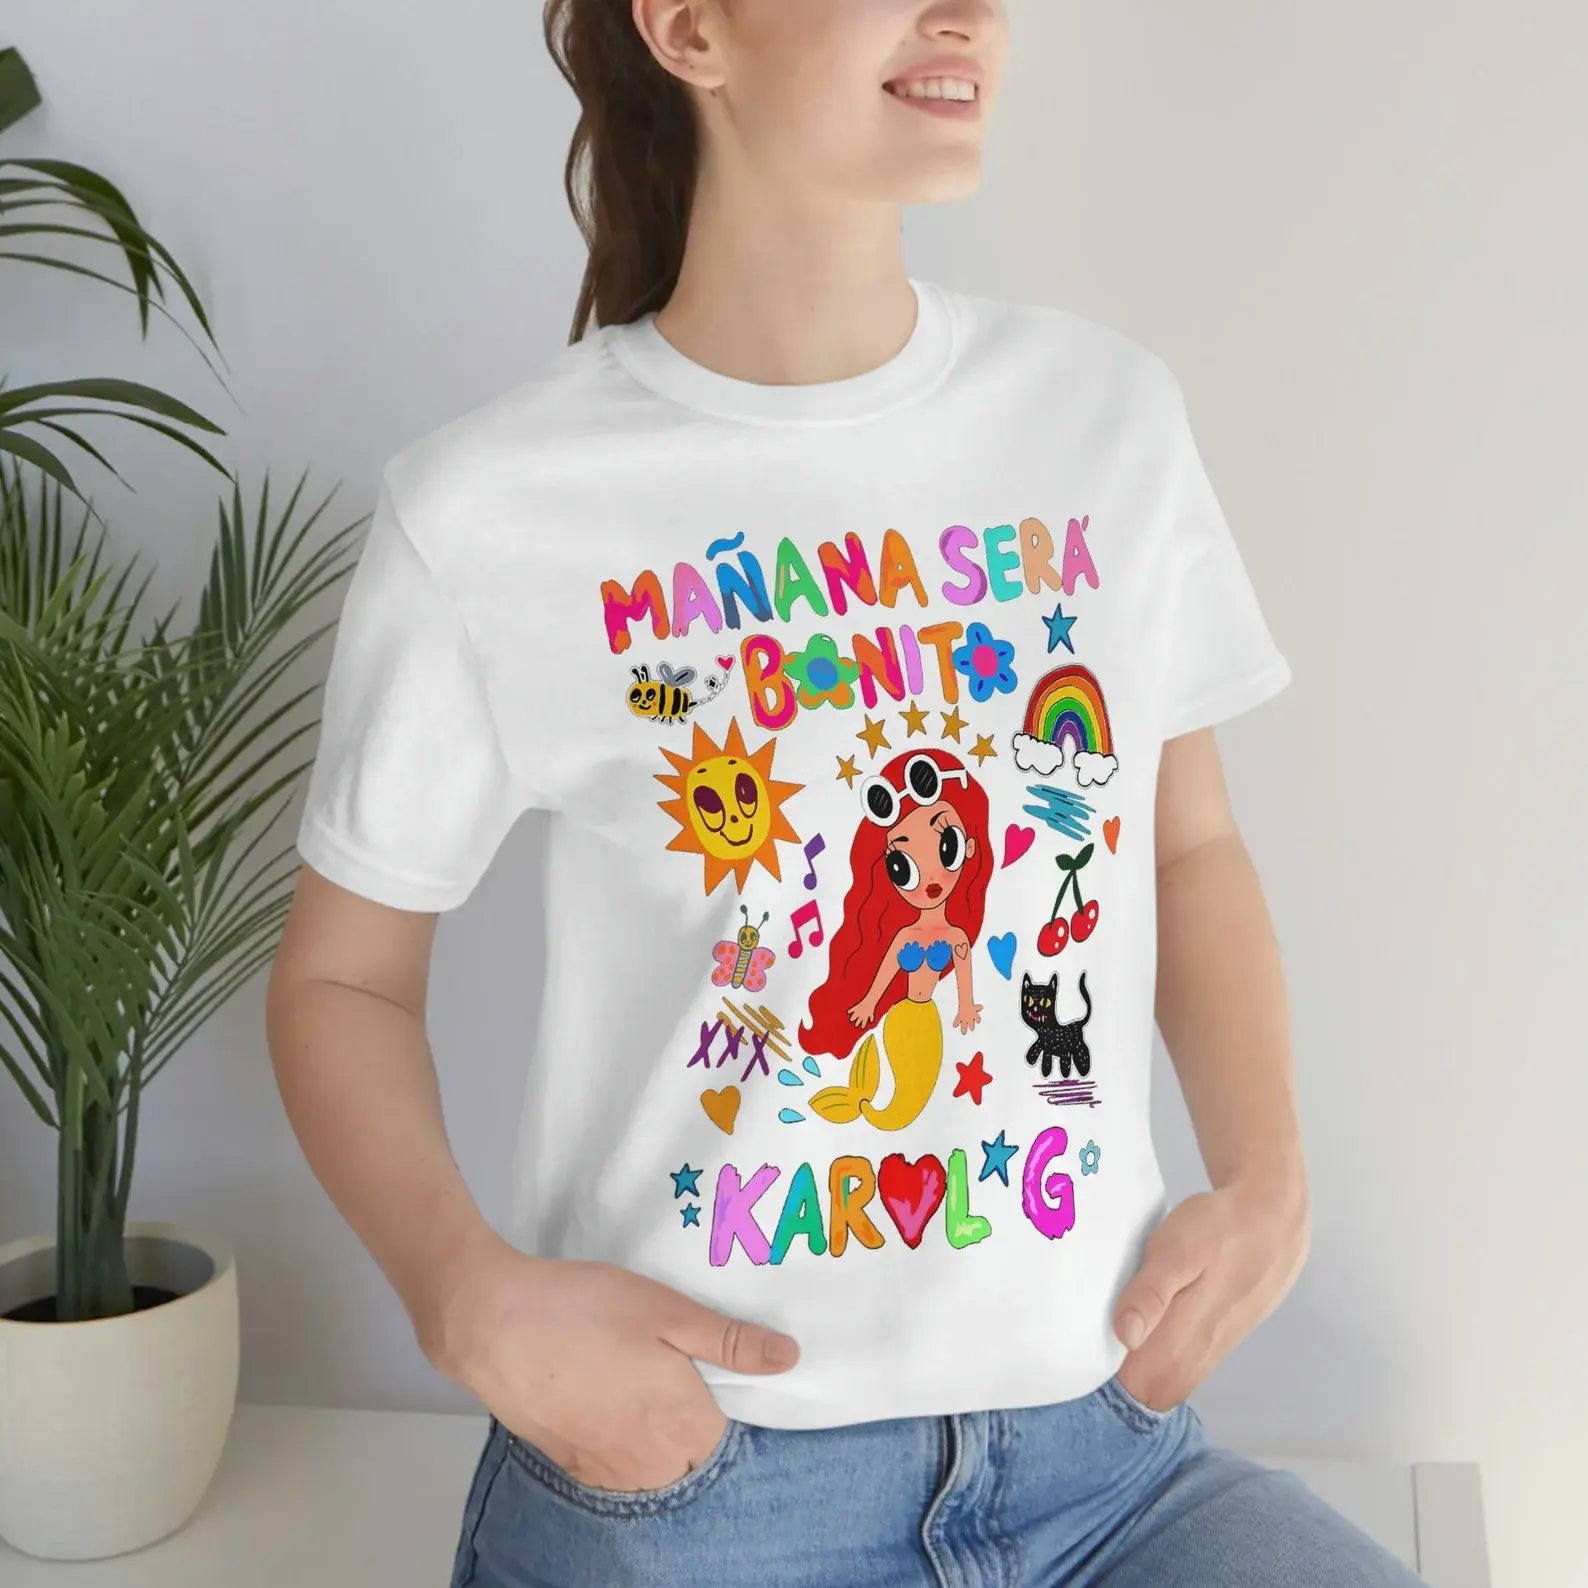 Custom Singer Music Karol Bichota Manana Sera Bonito and Heart Tattoo T-Shirt Gift For Women and Man Unisex Shirts